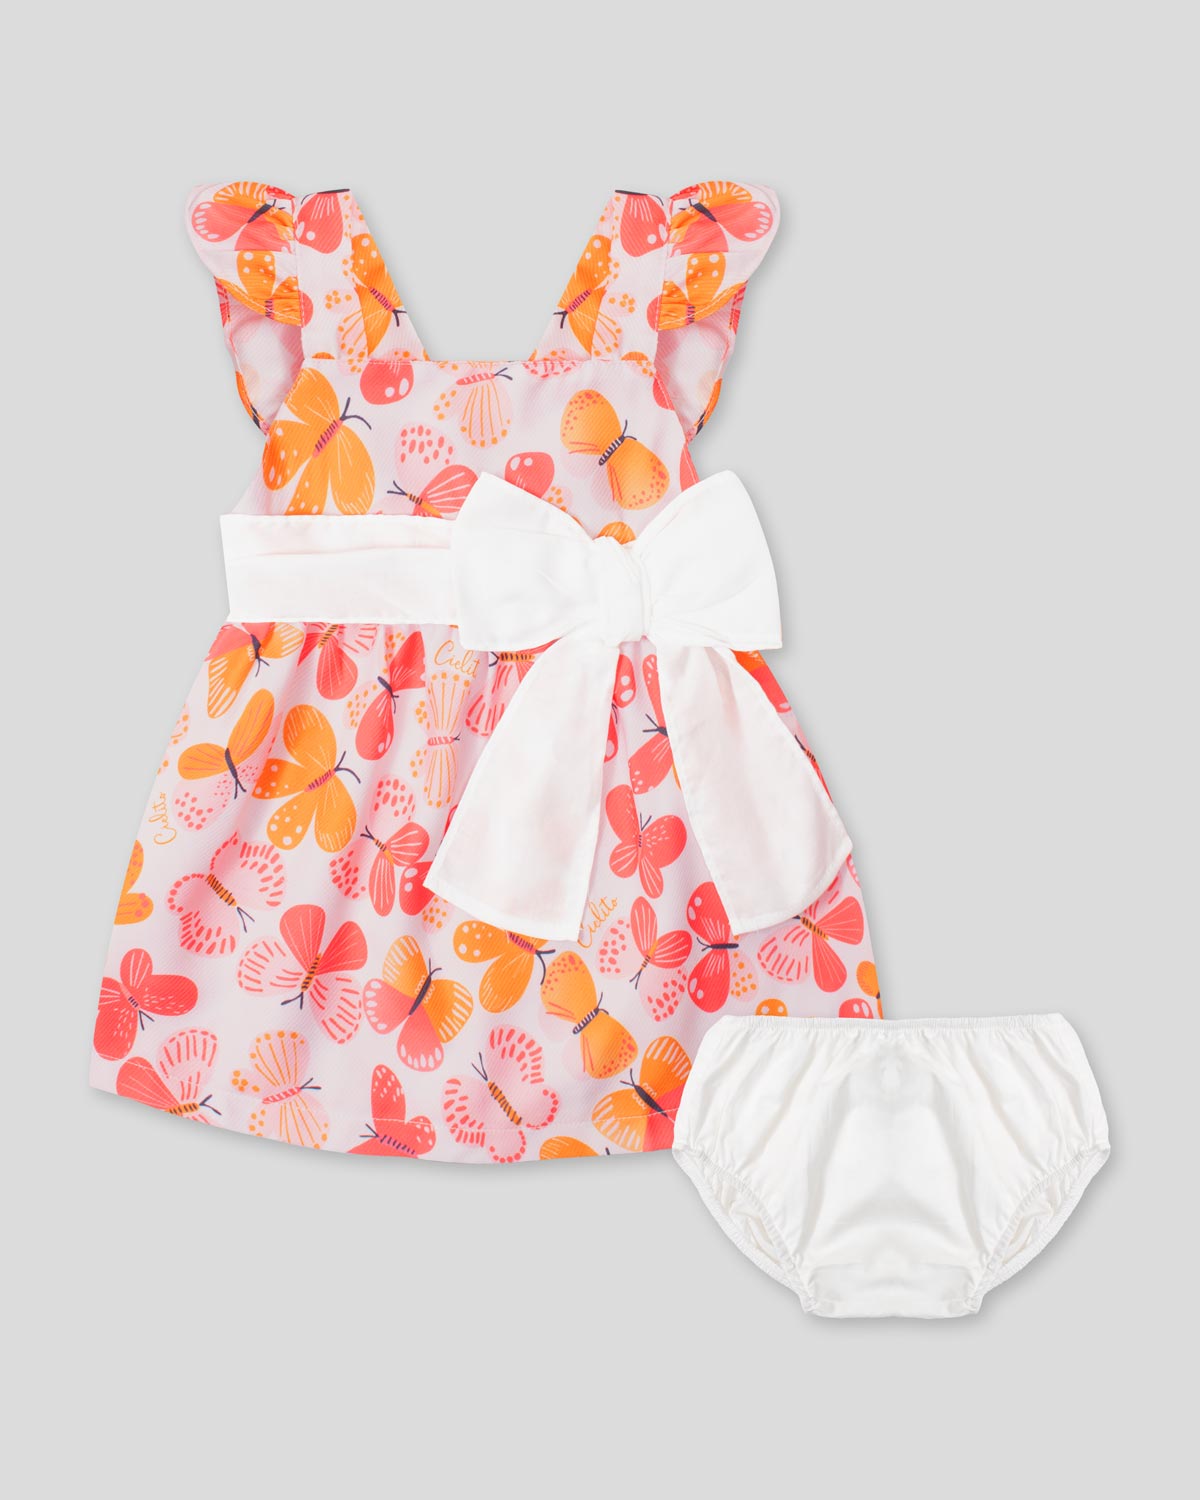 Vestido con estampado de mariposas, detalles de bolero, moño blanco y calzón para bebé niña